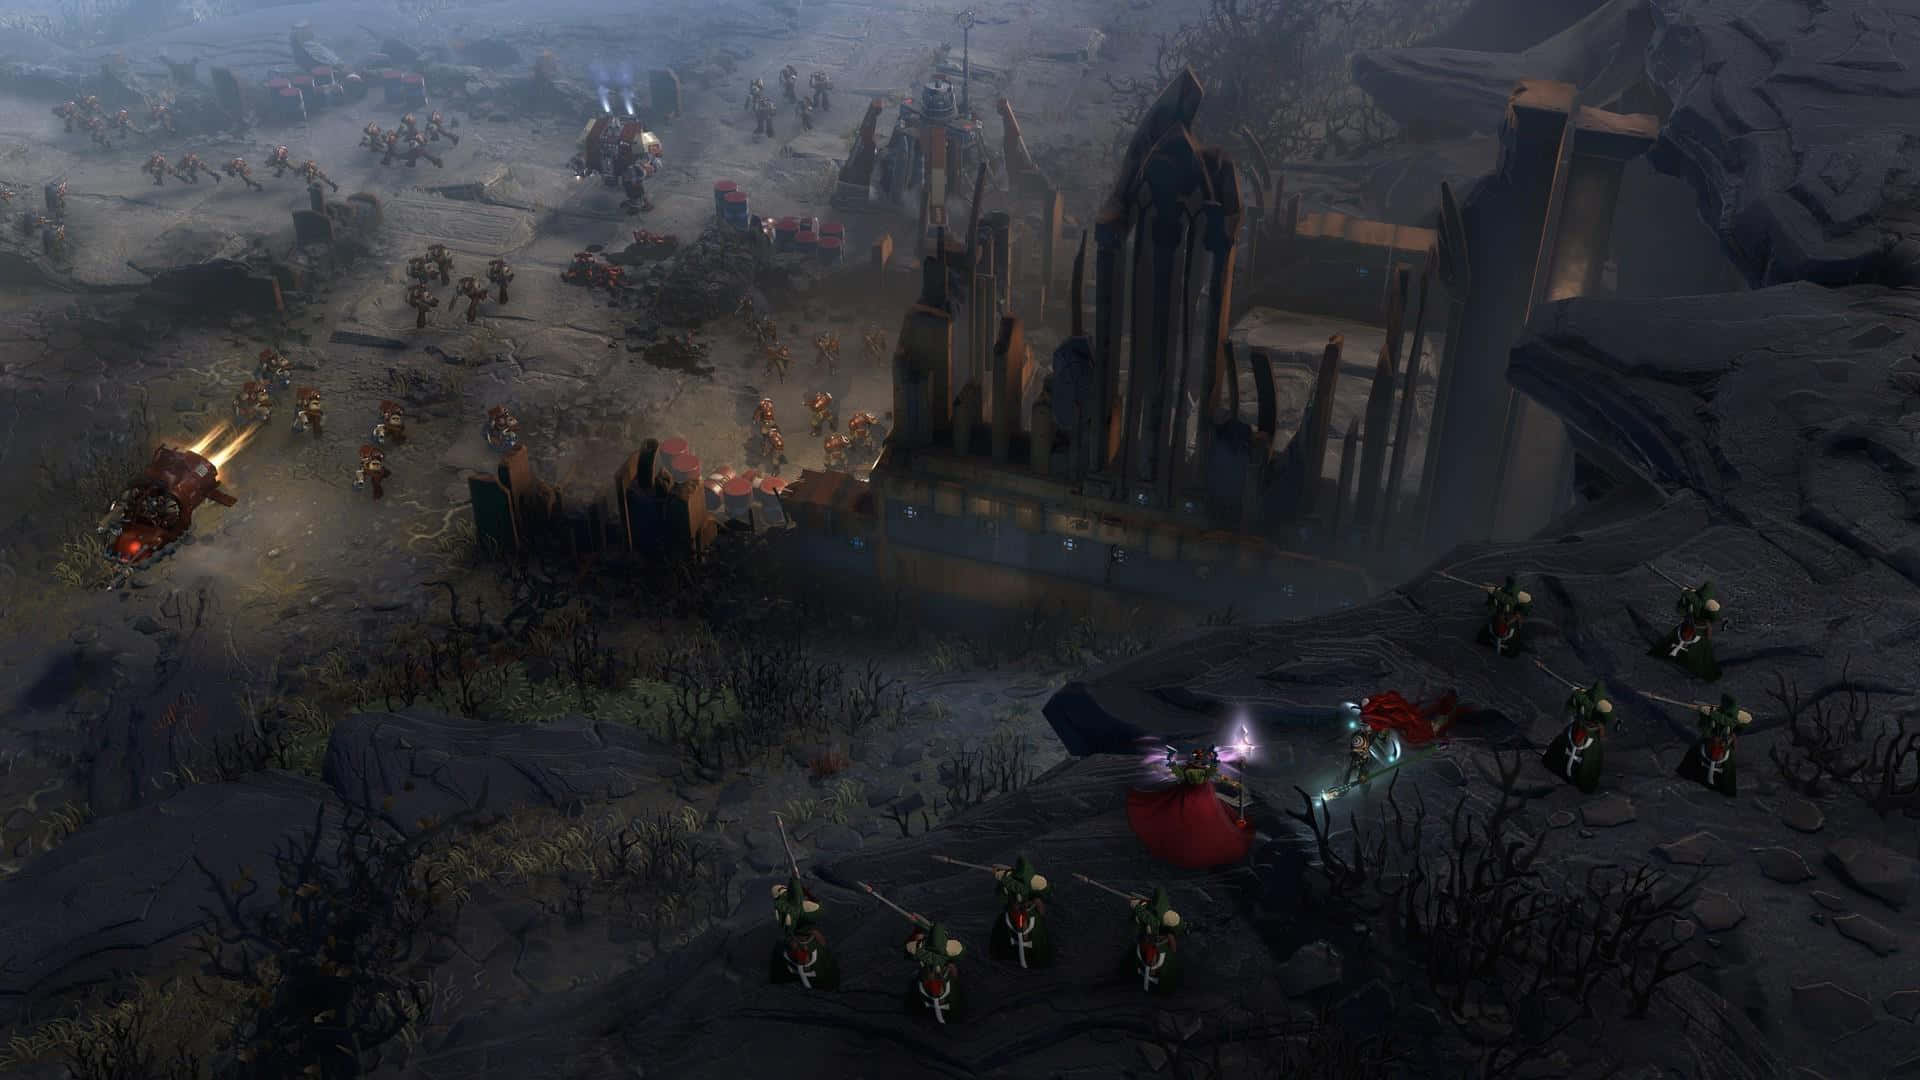 Högupplöstbakgrund Till Datorspelet Dawn Of War Iii